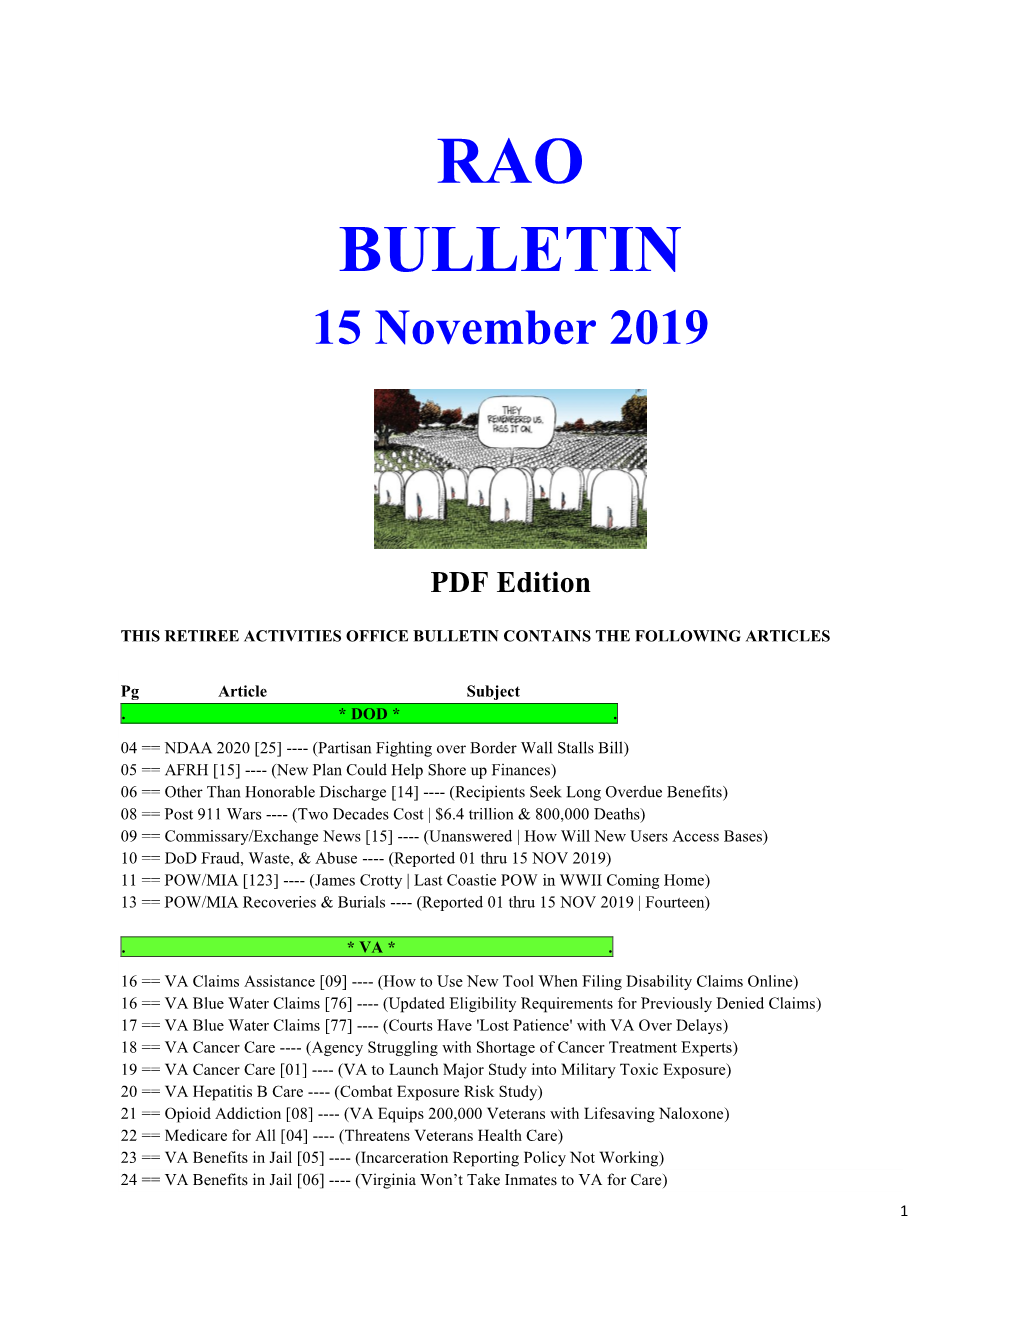 RAO BULLETIN 15 November 2019